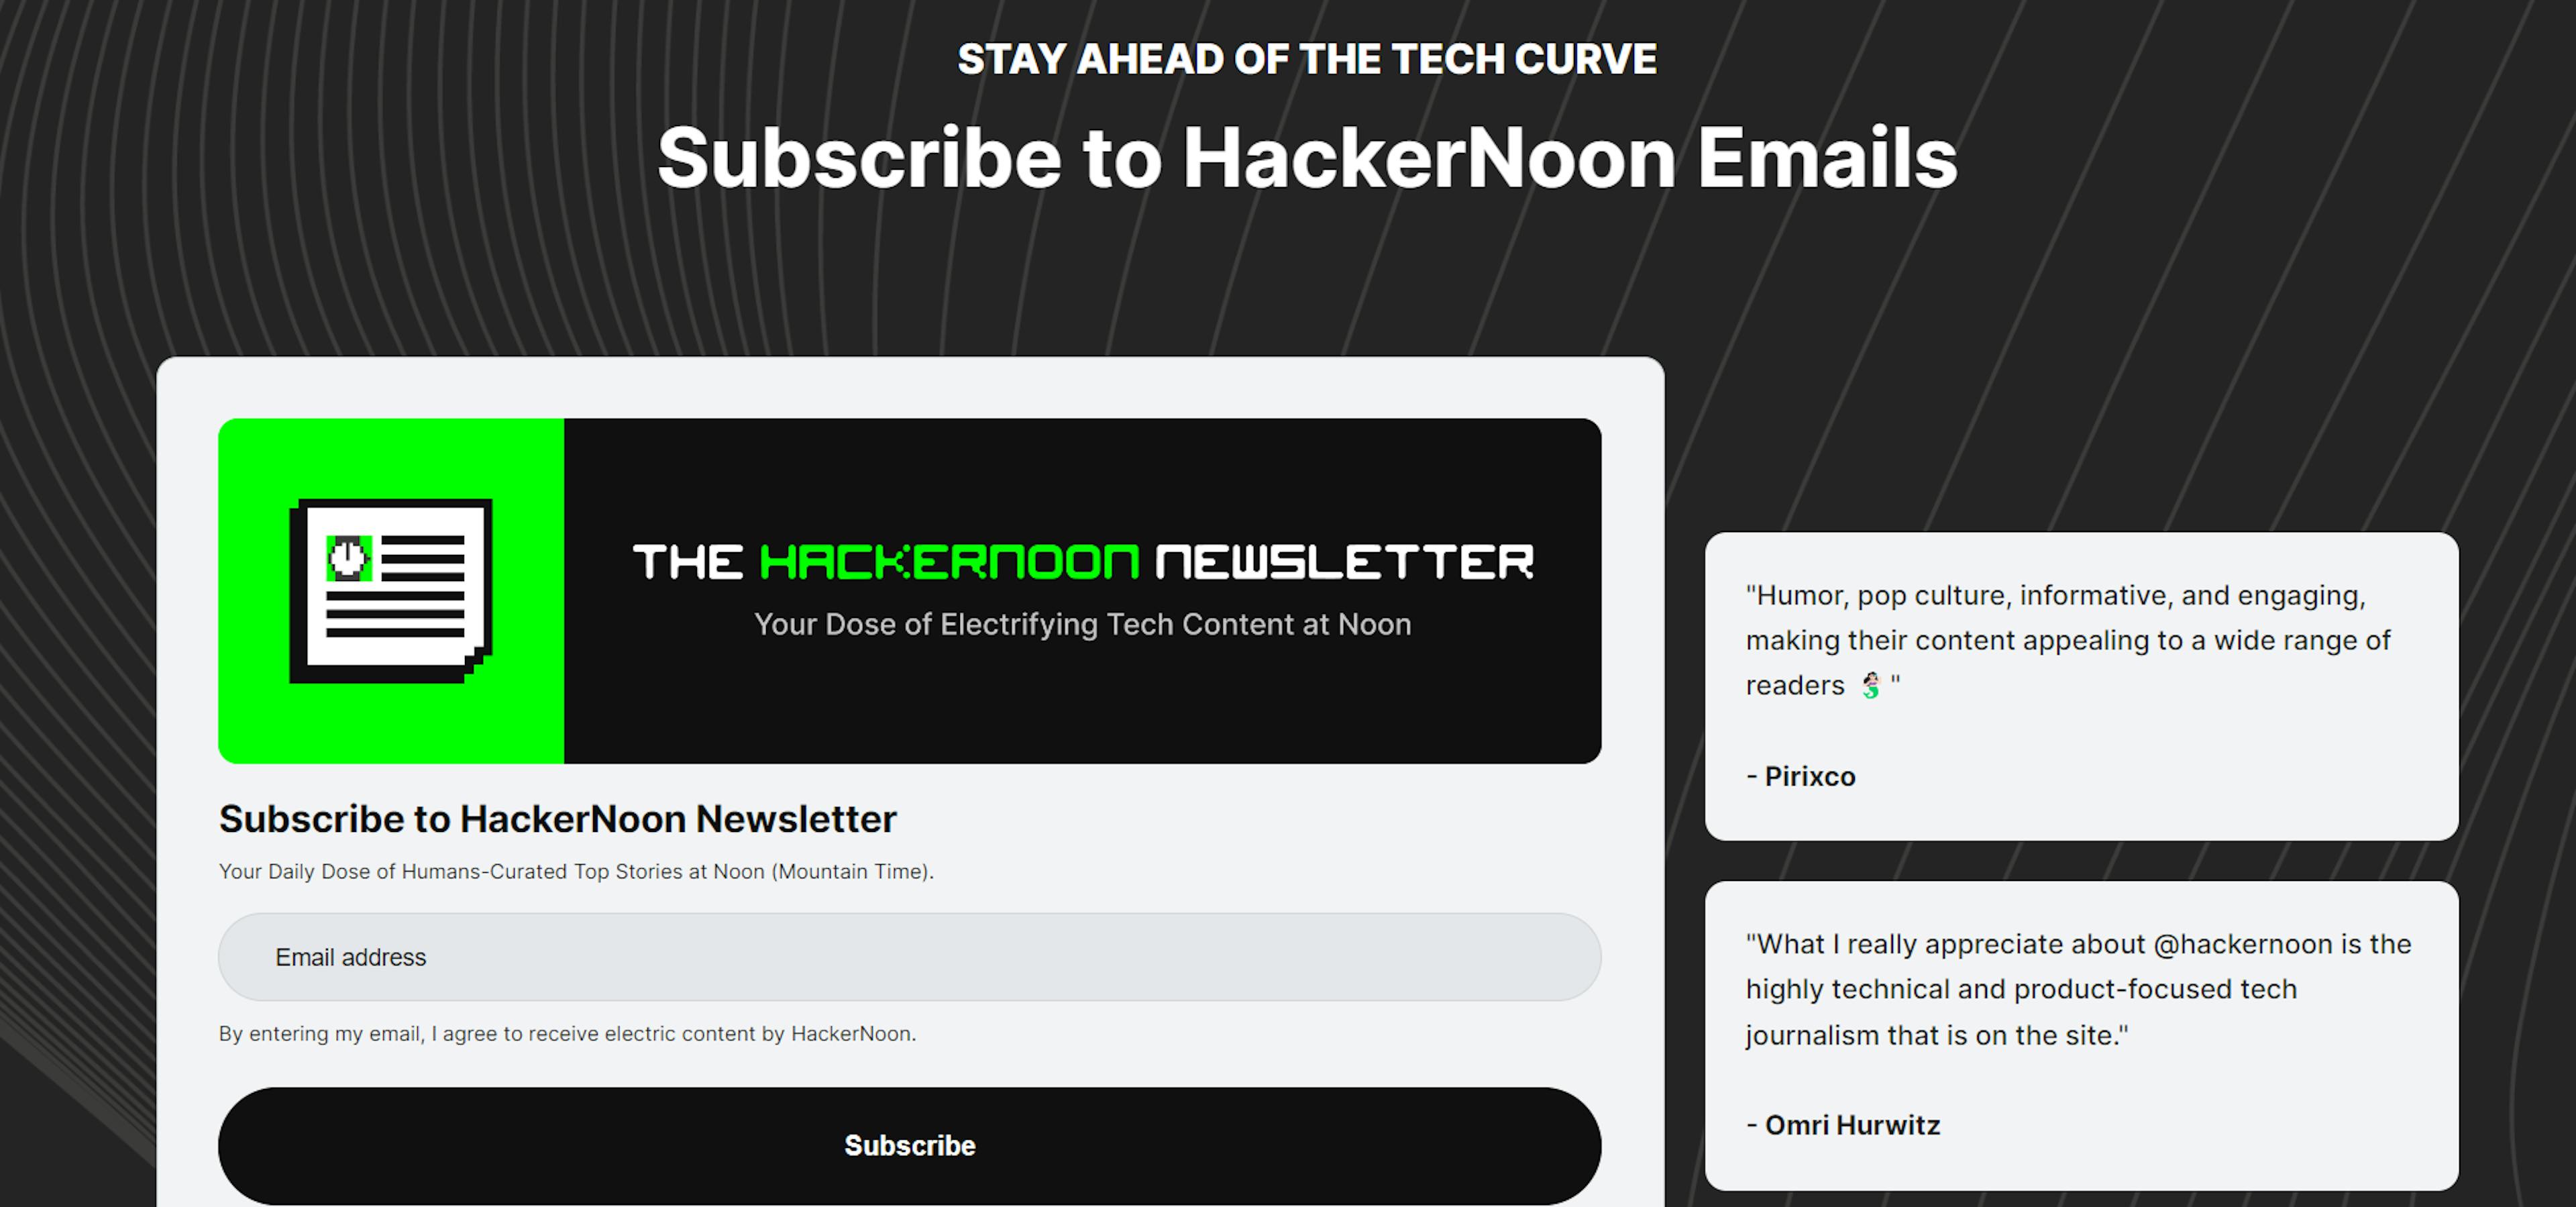 featured image - Tin tức công nghệ được cải tiến 🗞️ Tìm hiểu mọi thứ về trang email mới của HackerNoon